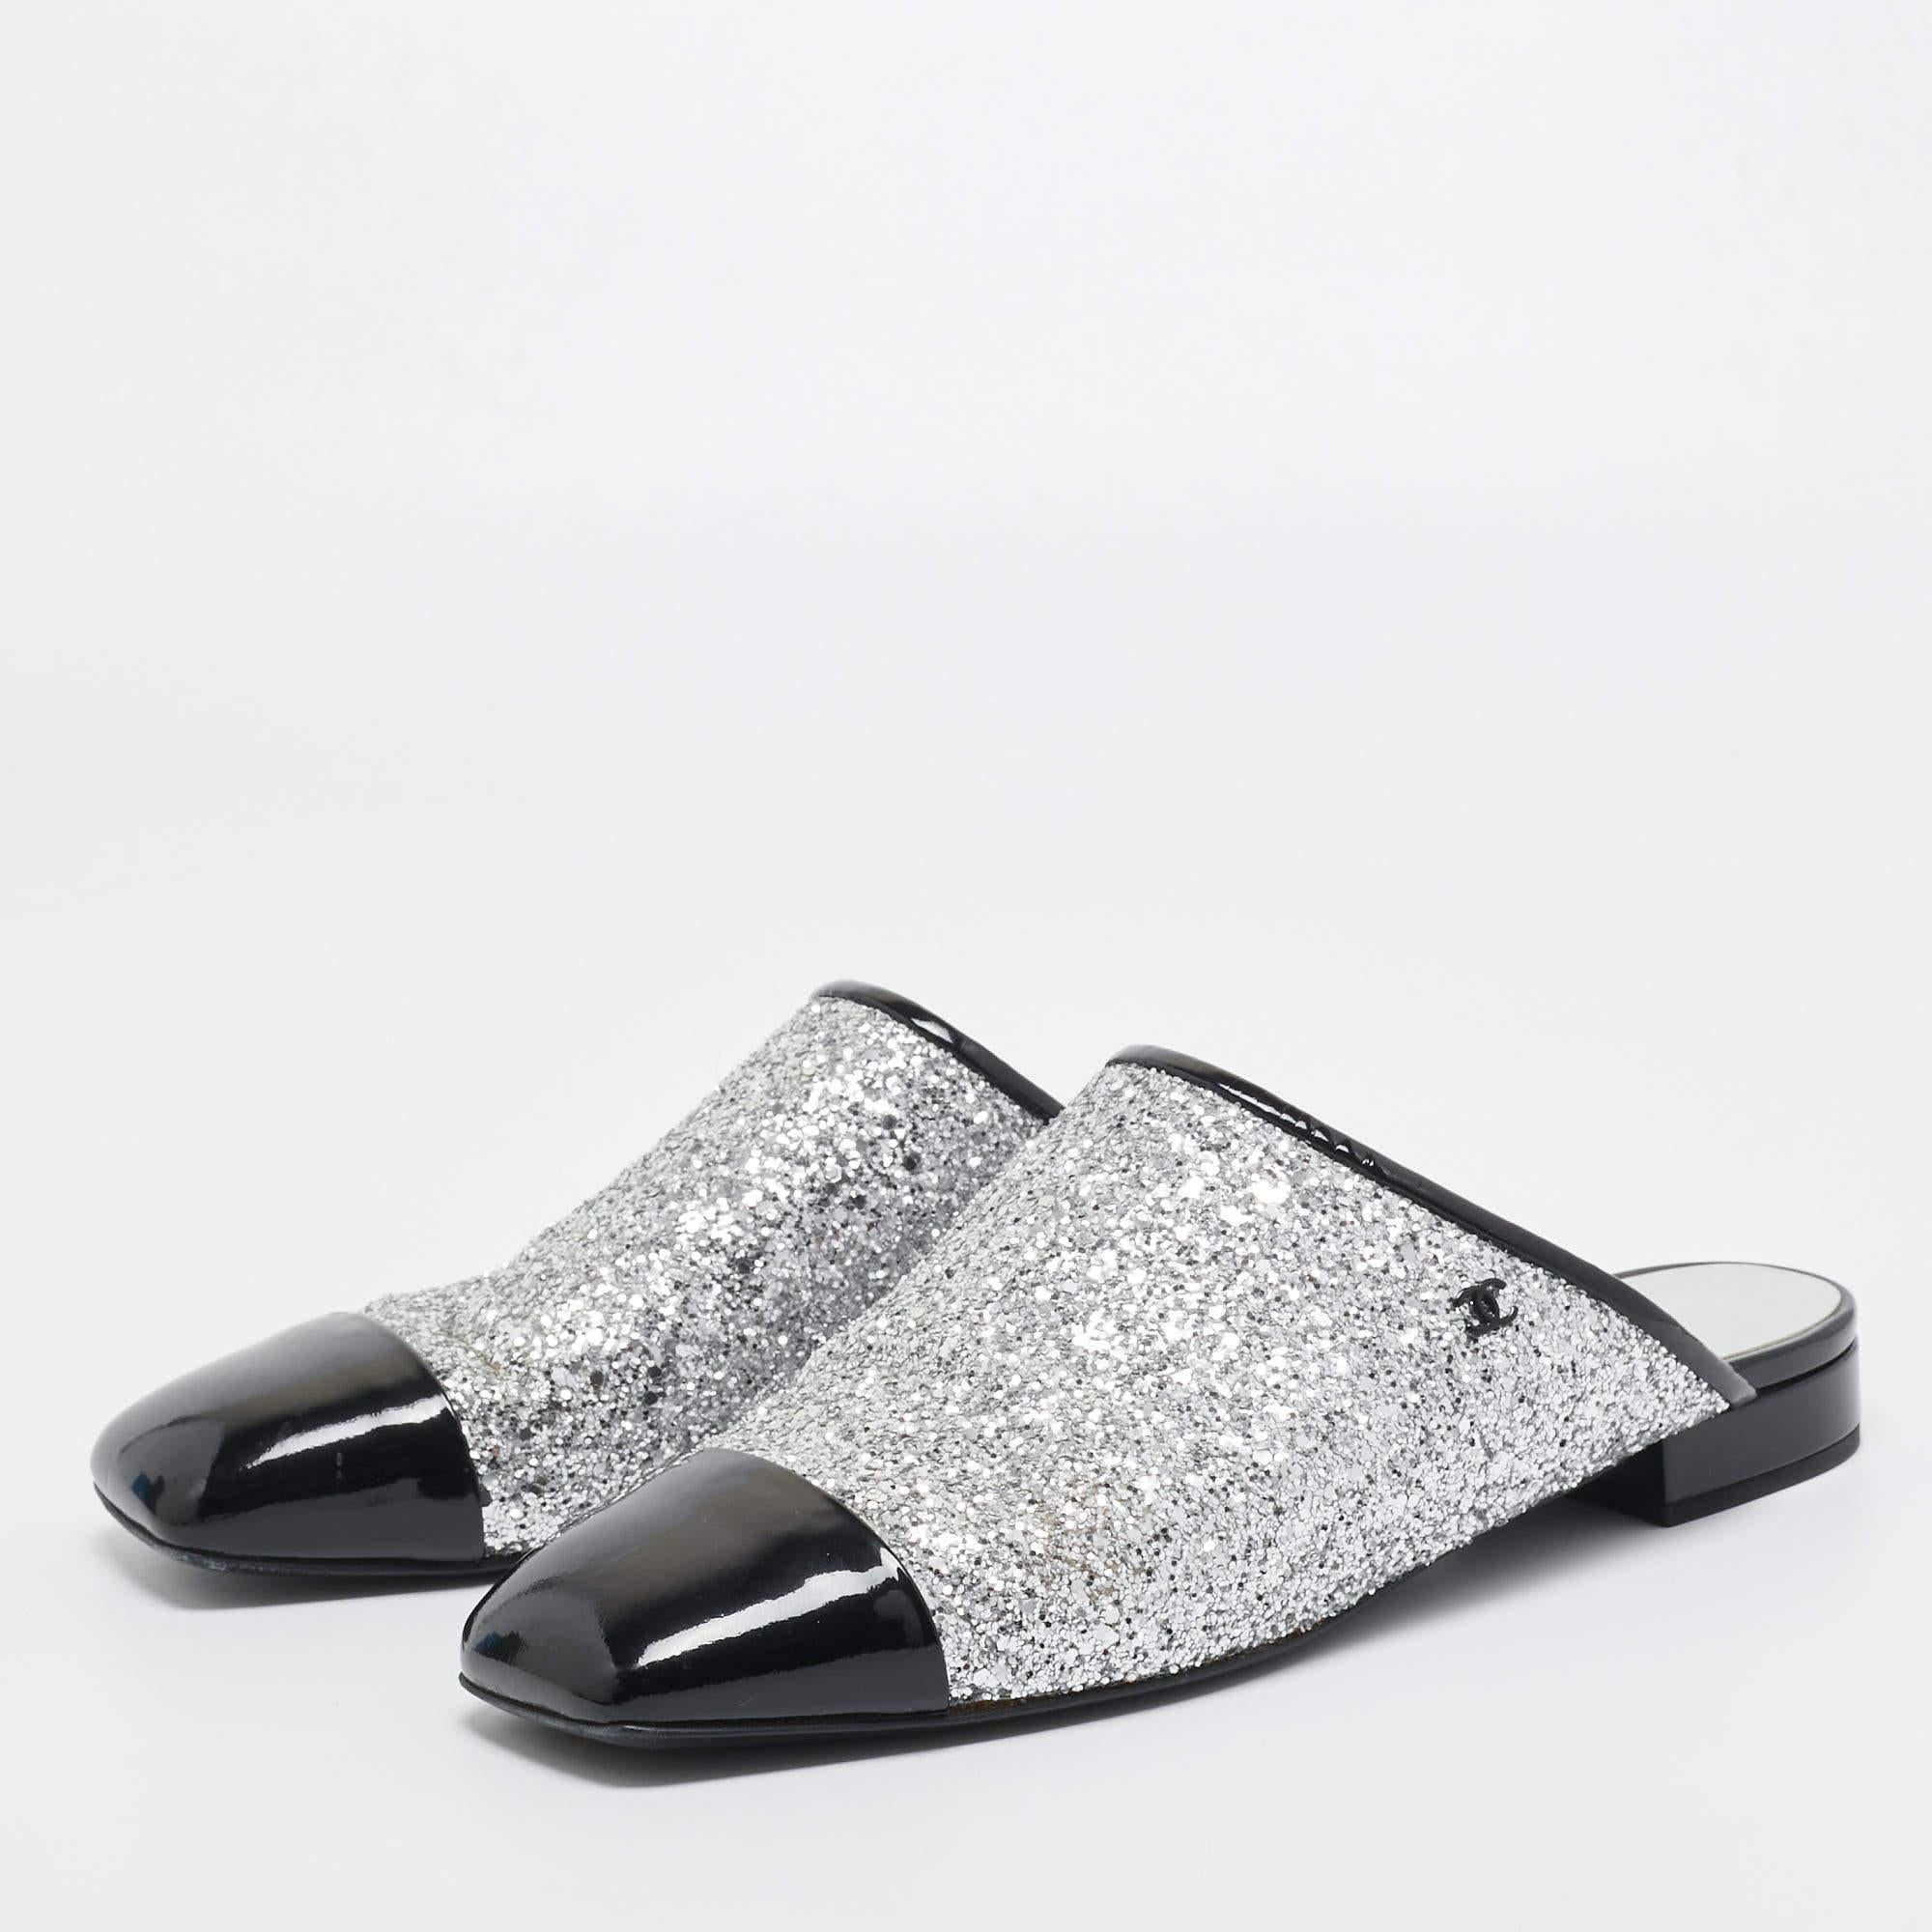 Chanel Silver/Black Coarse Glitter and Patent Cap Toe CC Mules Size 40 2